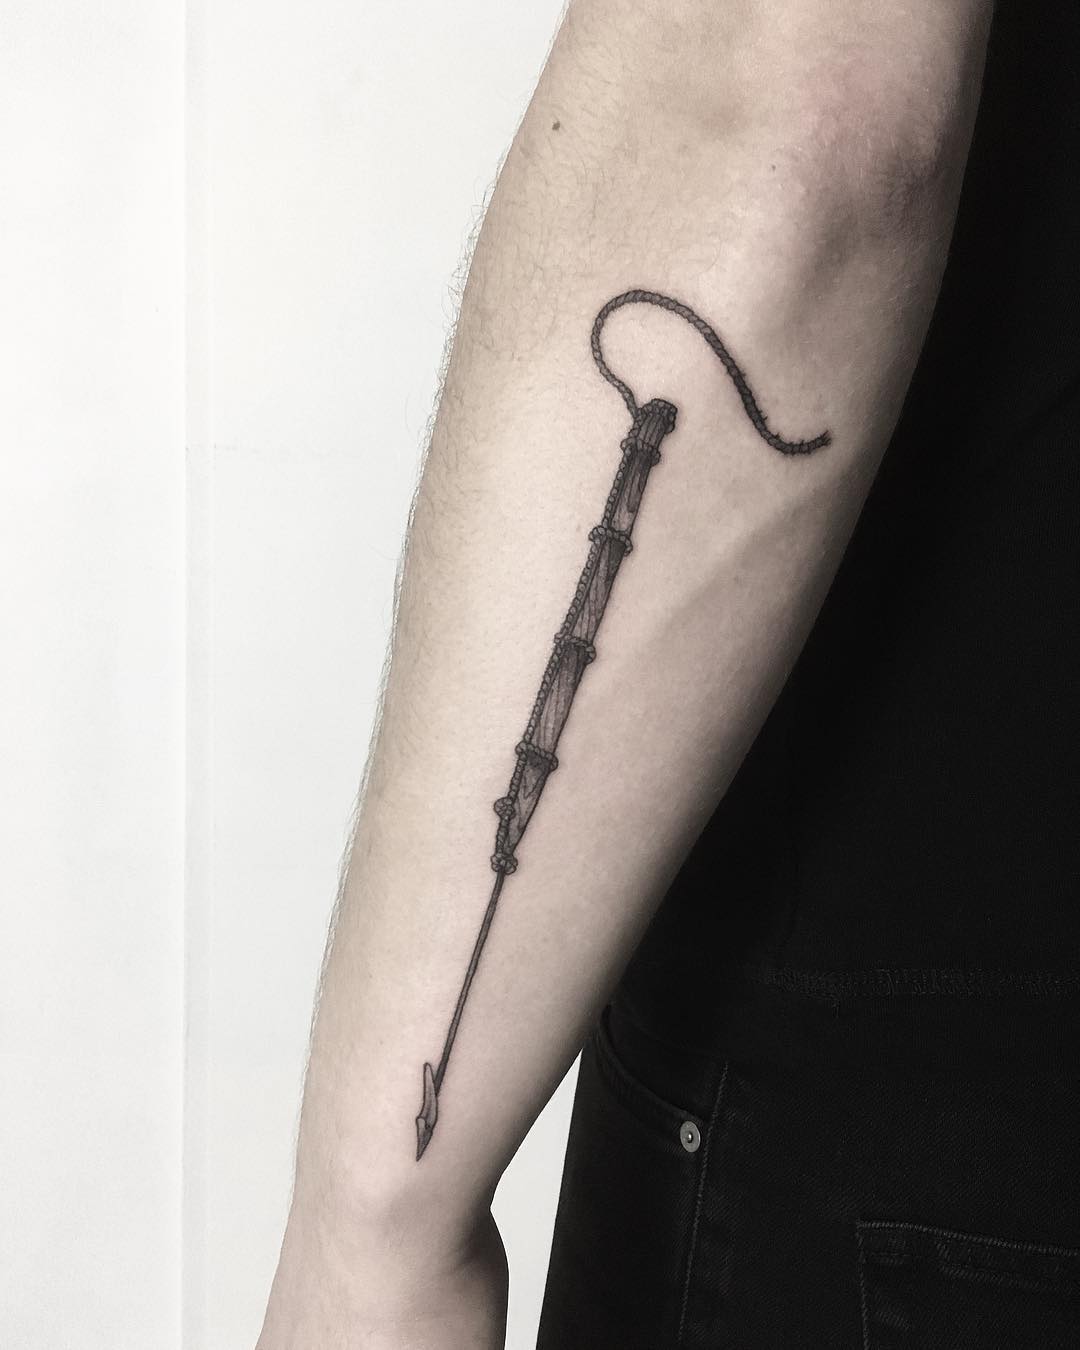 Harpoon tattoo by tattooist Spence @zz tattoo